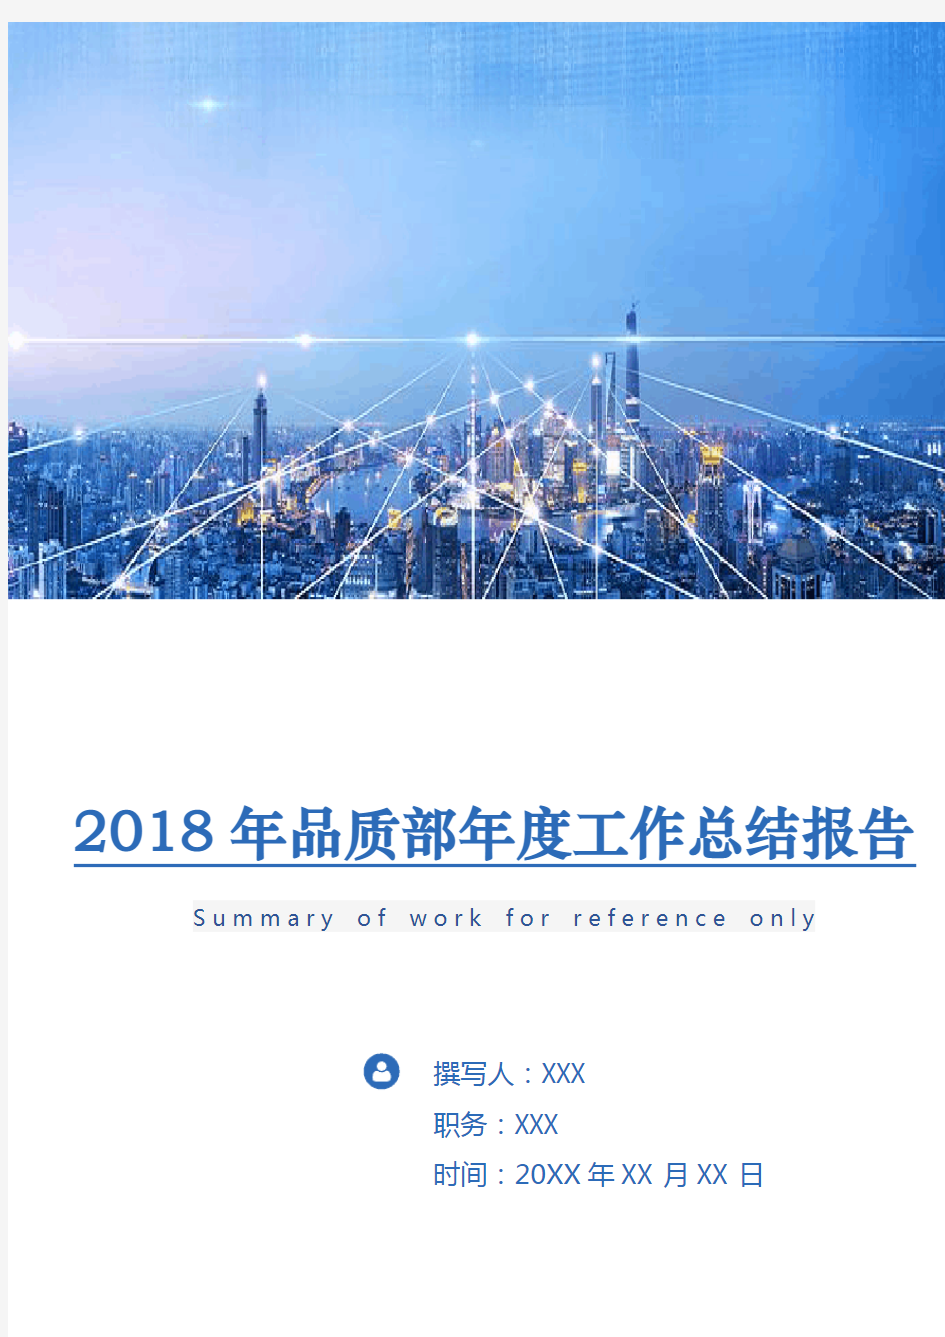 2018年品质部年度工作总结报告